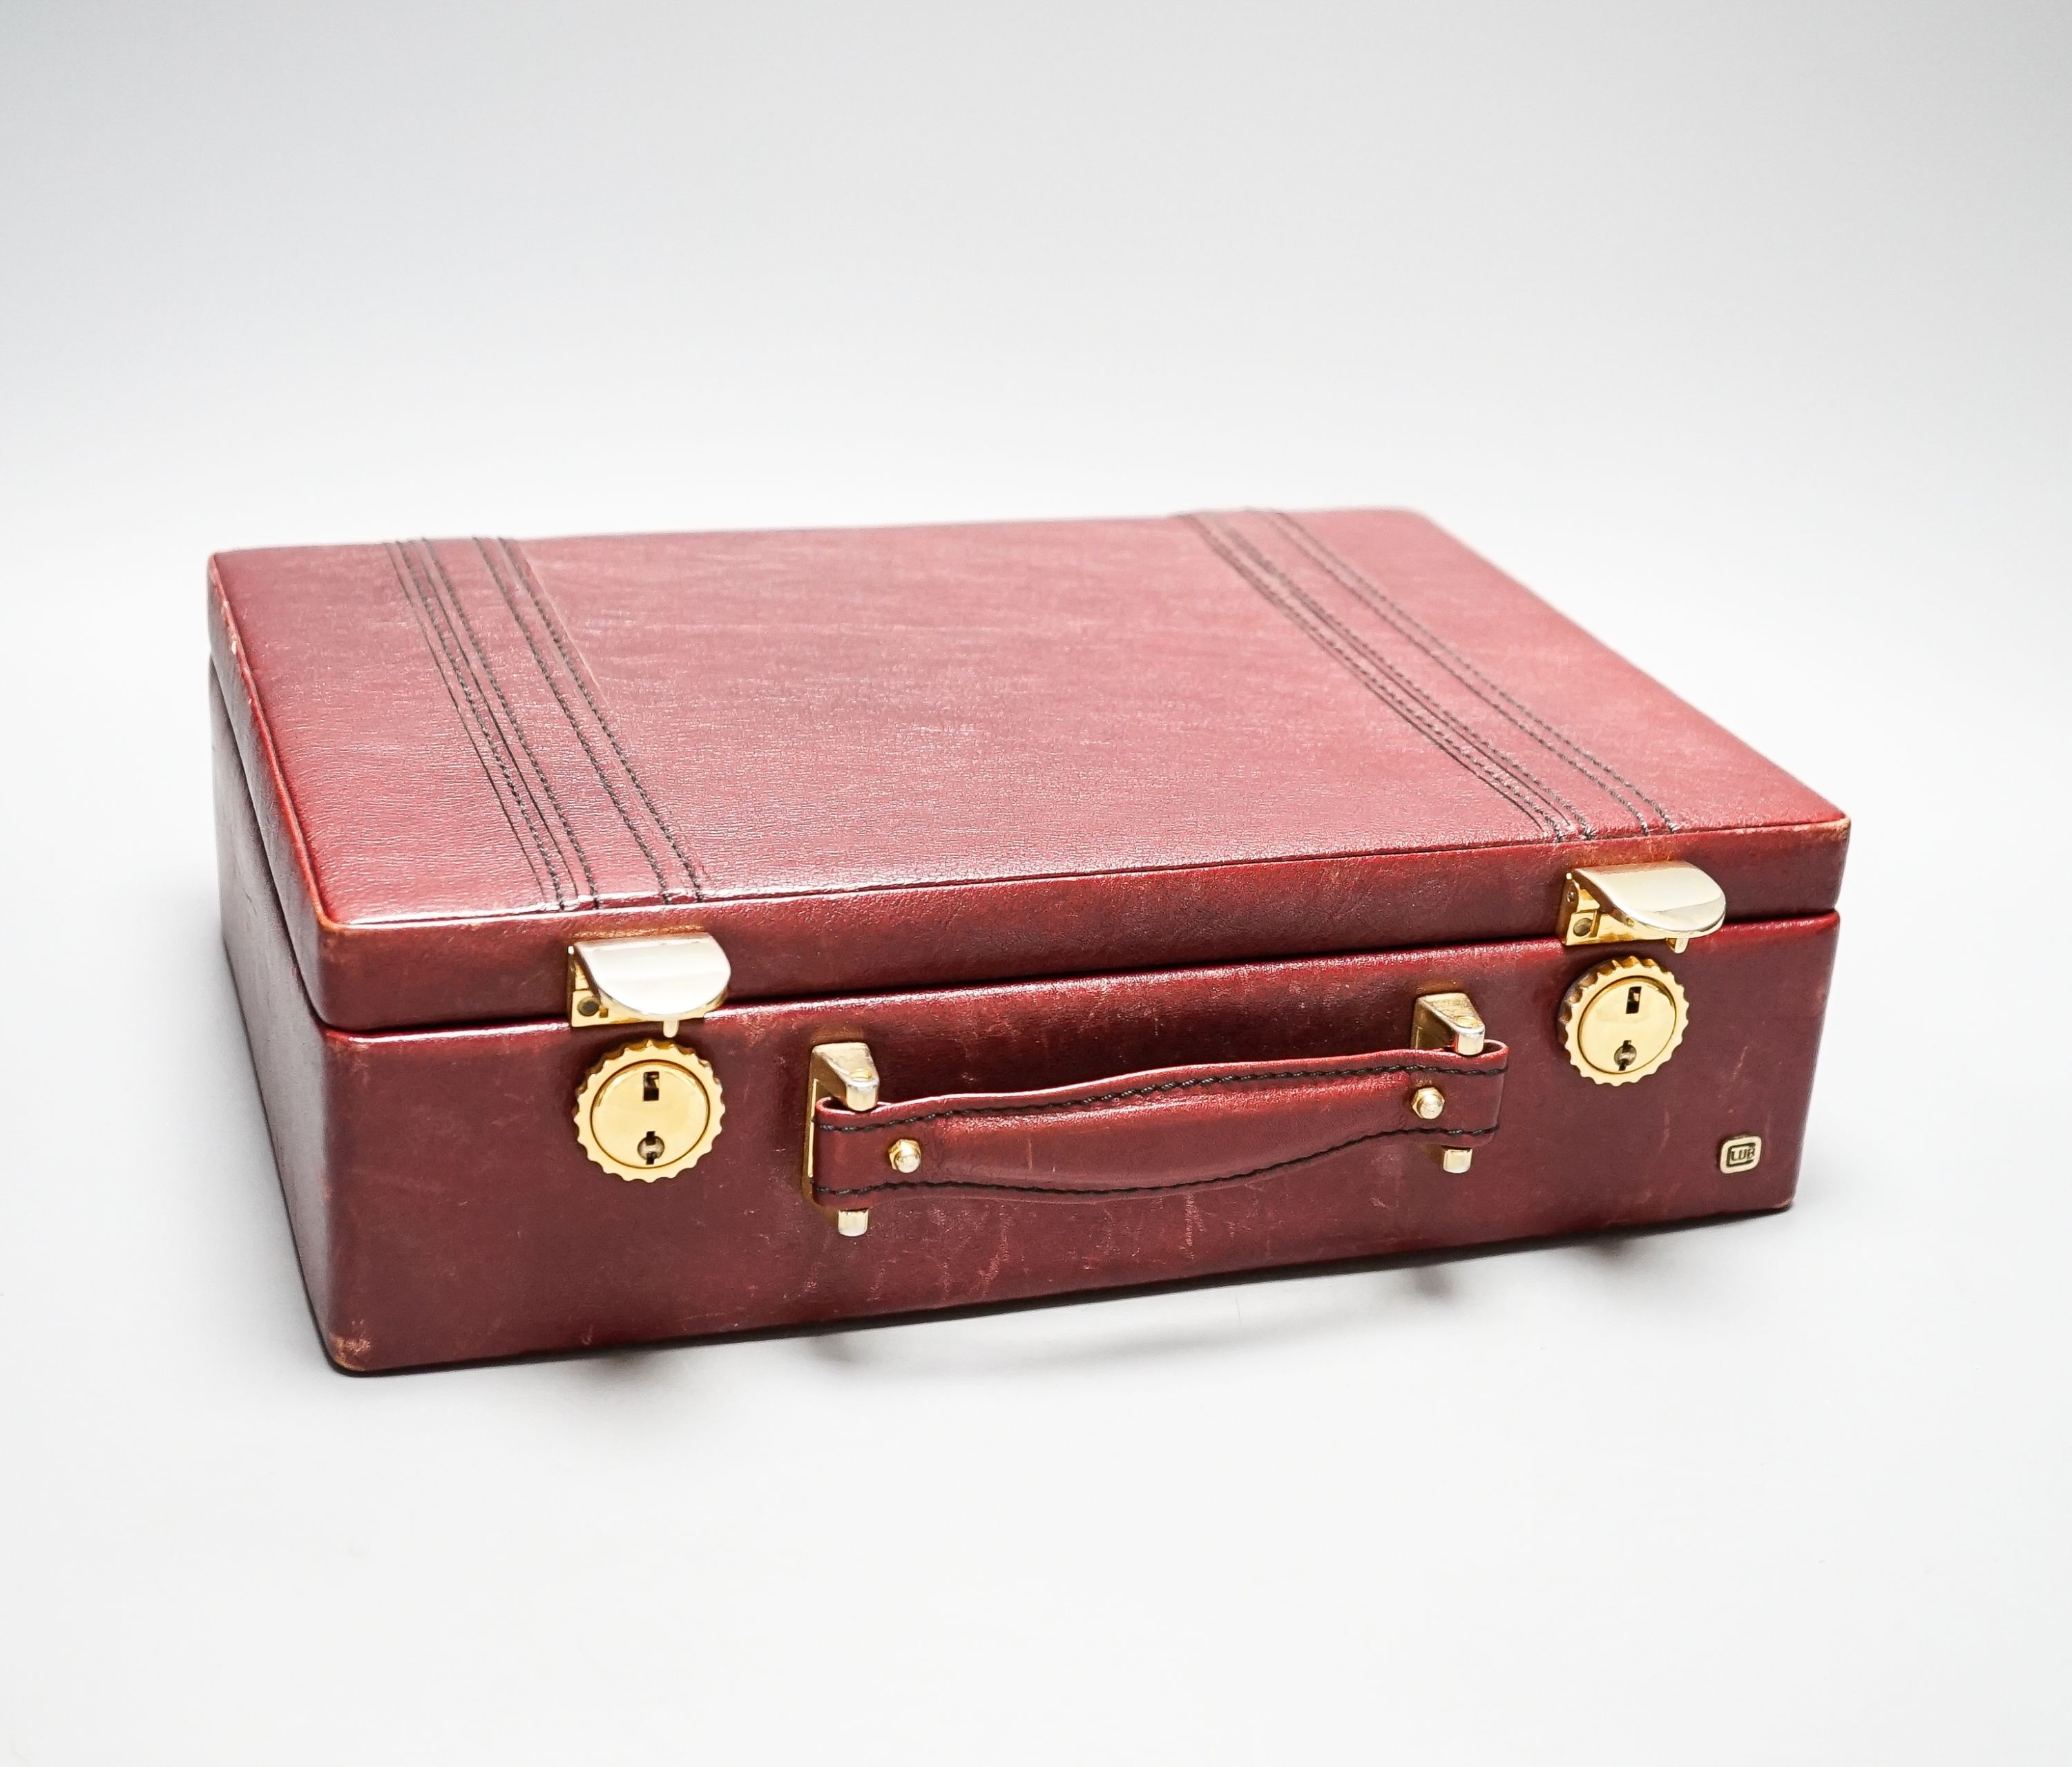 A leatherette brief case, 32 x 23 x 9cm